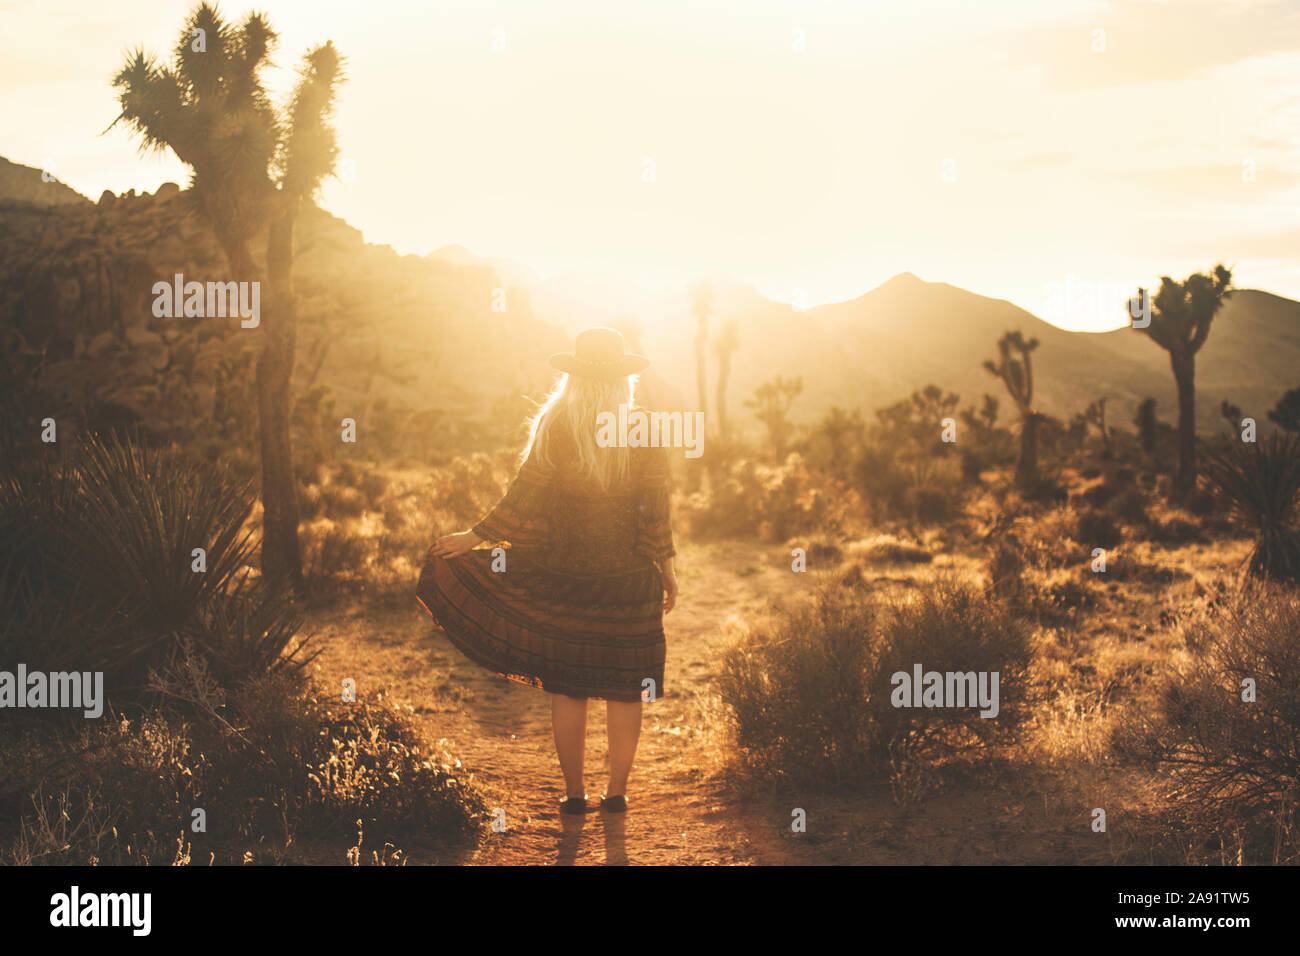 Woman on desert at sunset Stock Photo